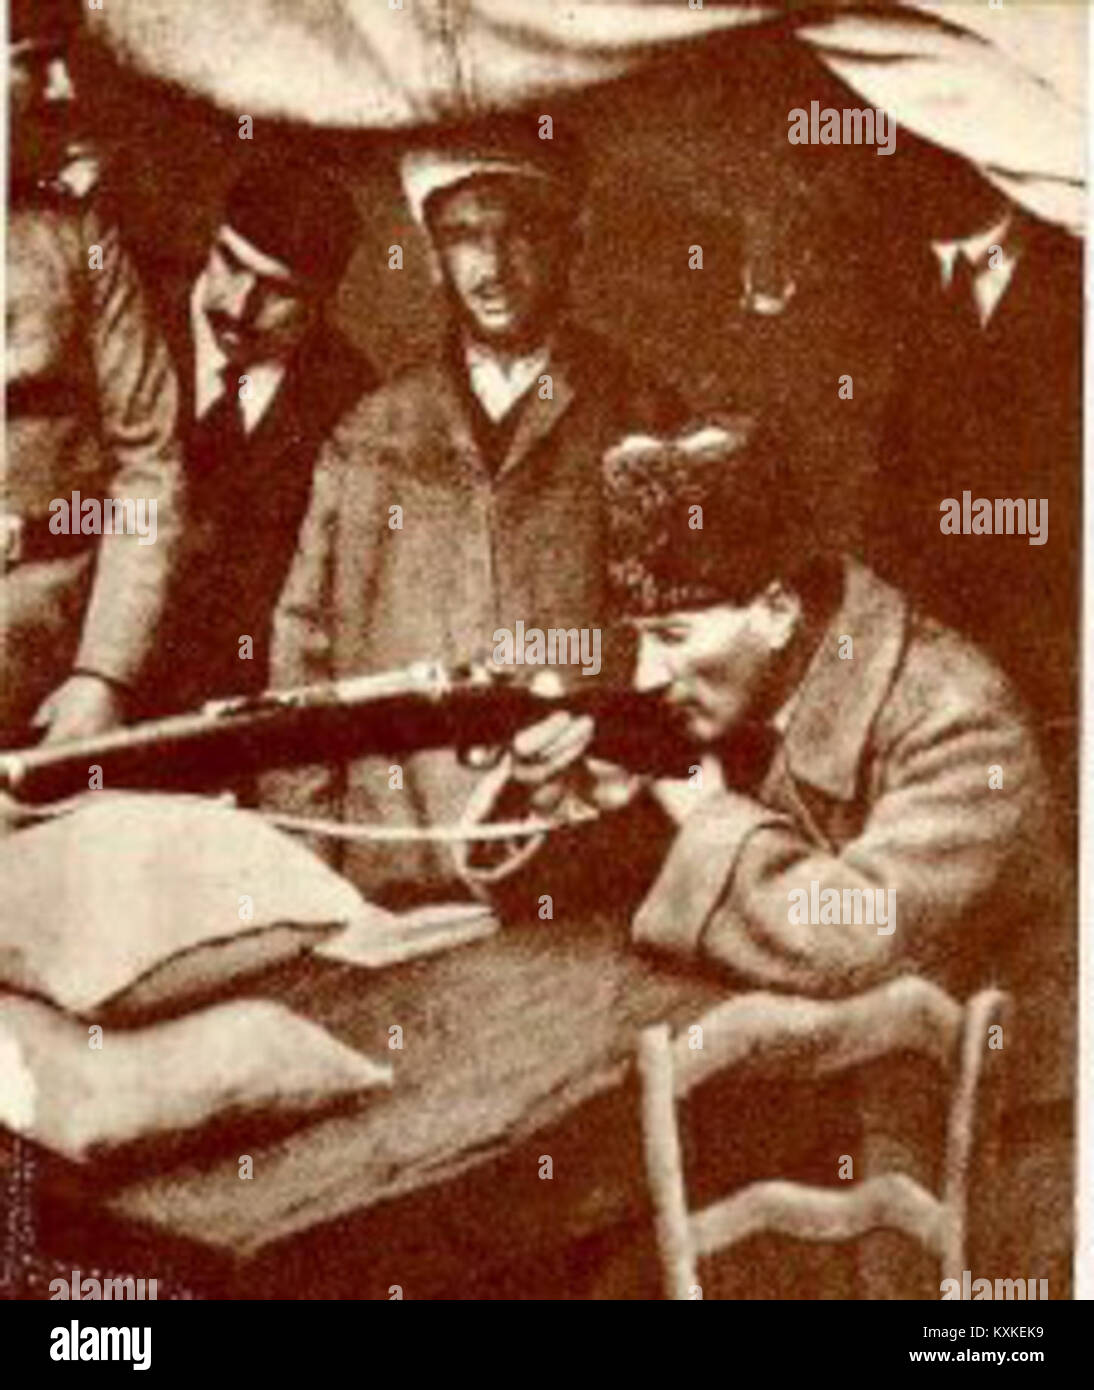 Atatürk in target practice, 1922 Stock Photo